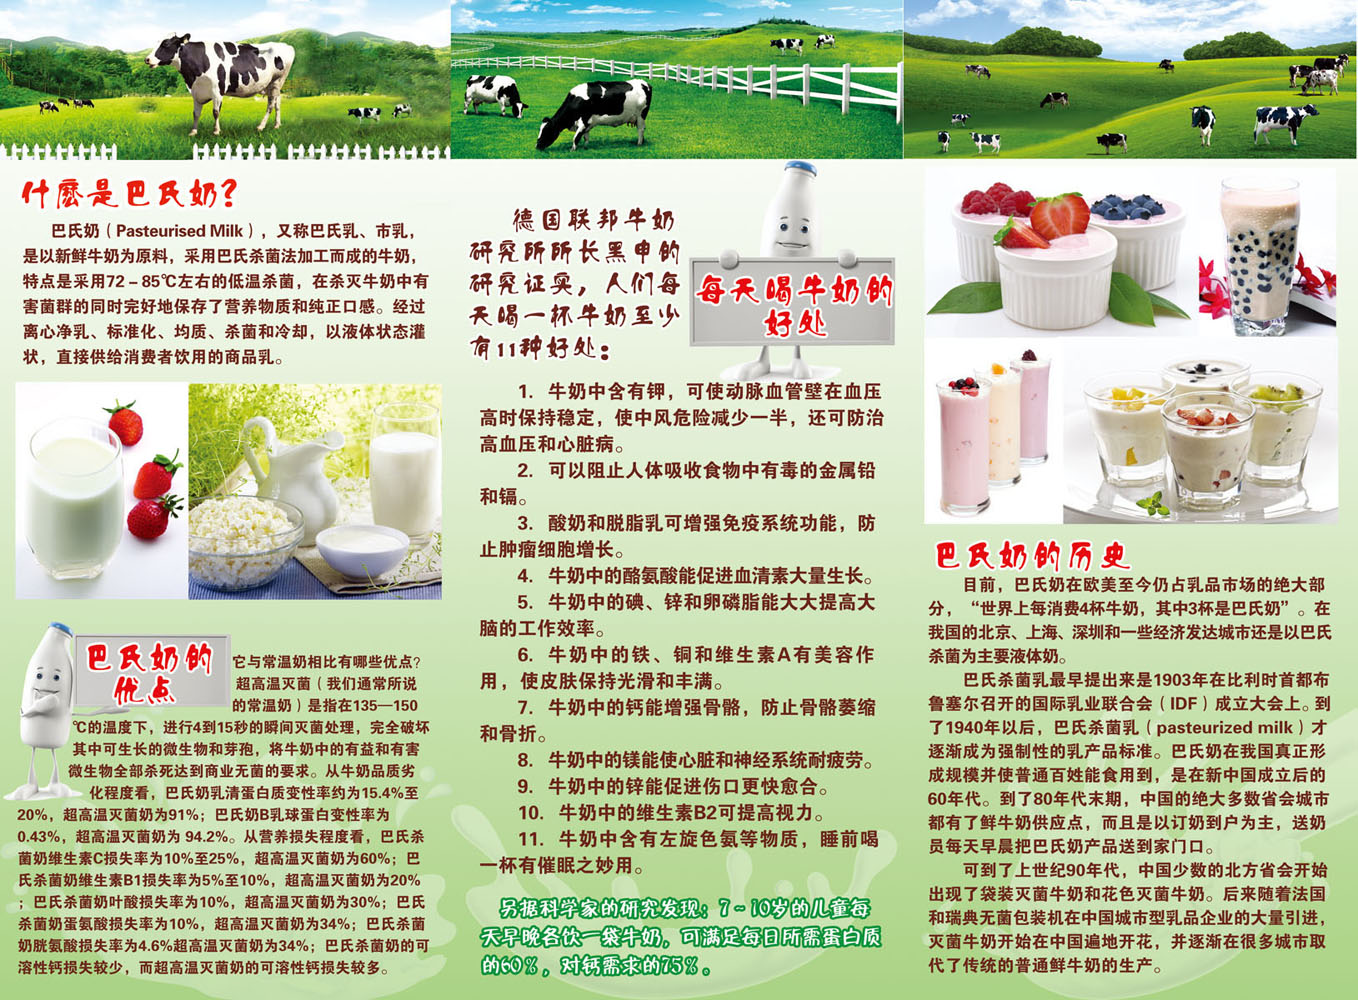 海报印制656宣传单张DM单设计制作素材1001鲜奶公司简介好处优点